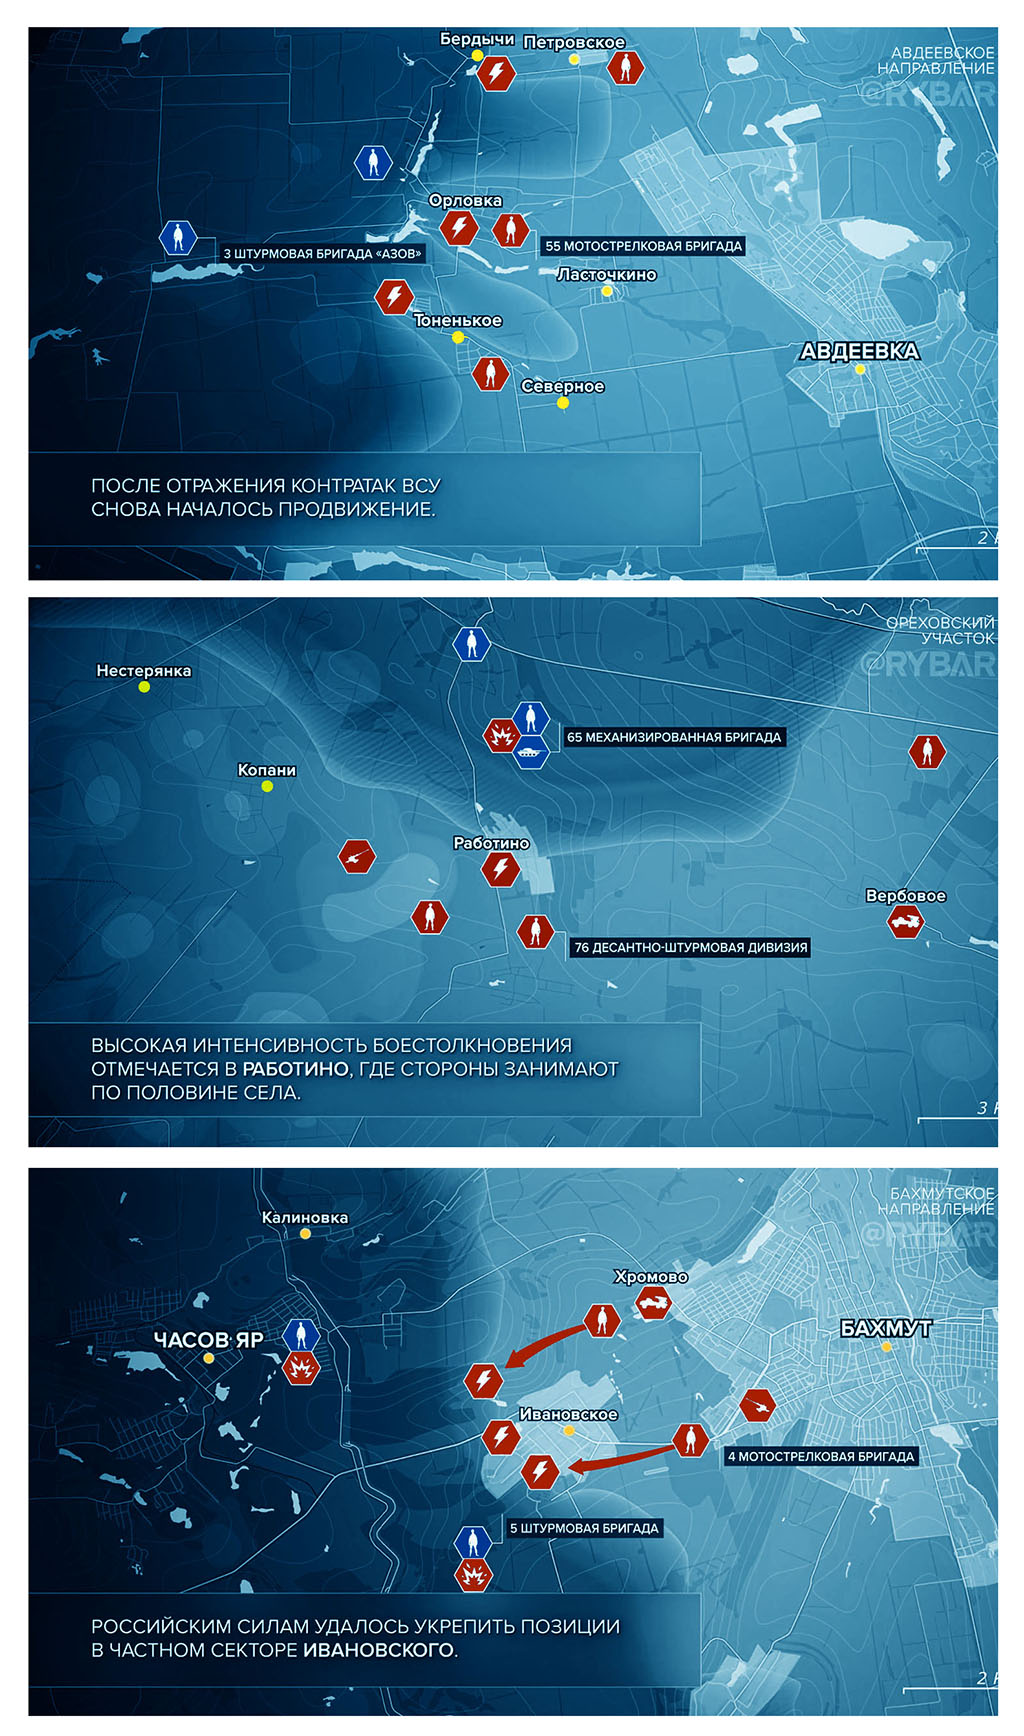 Карта боевых действий на Украине, Обстановка по направлениям, к утру 18.03.24 г. Карта СВО от «Рыбарь».